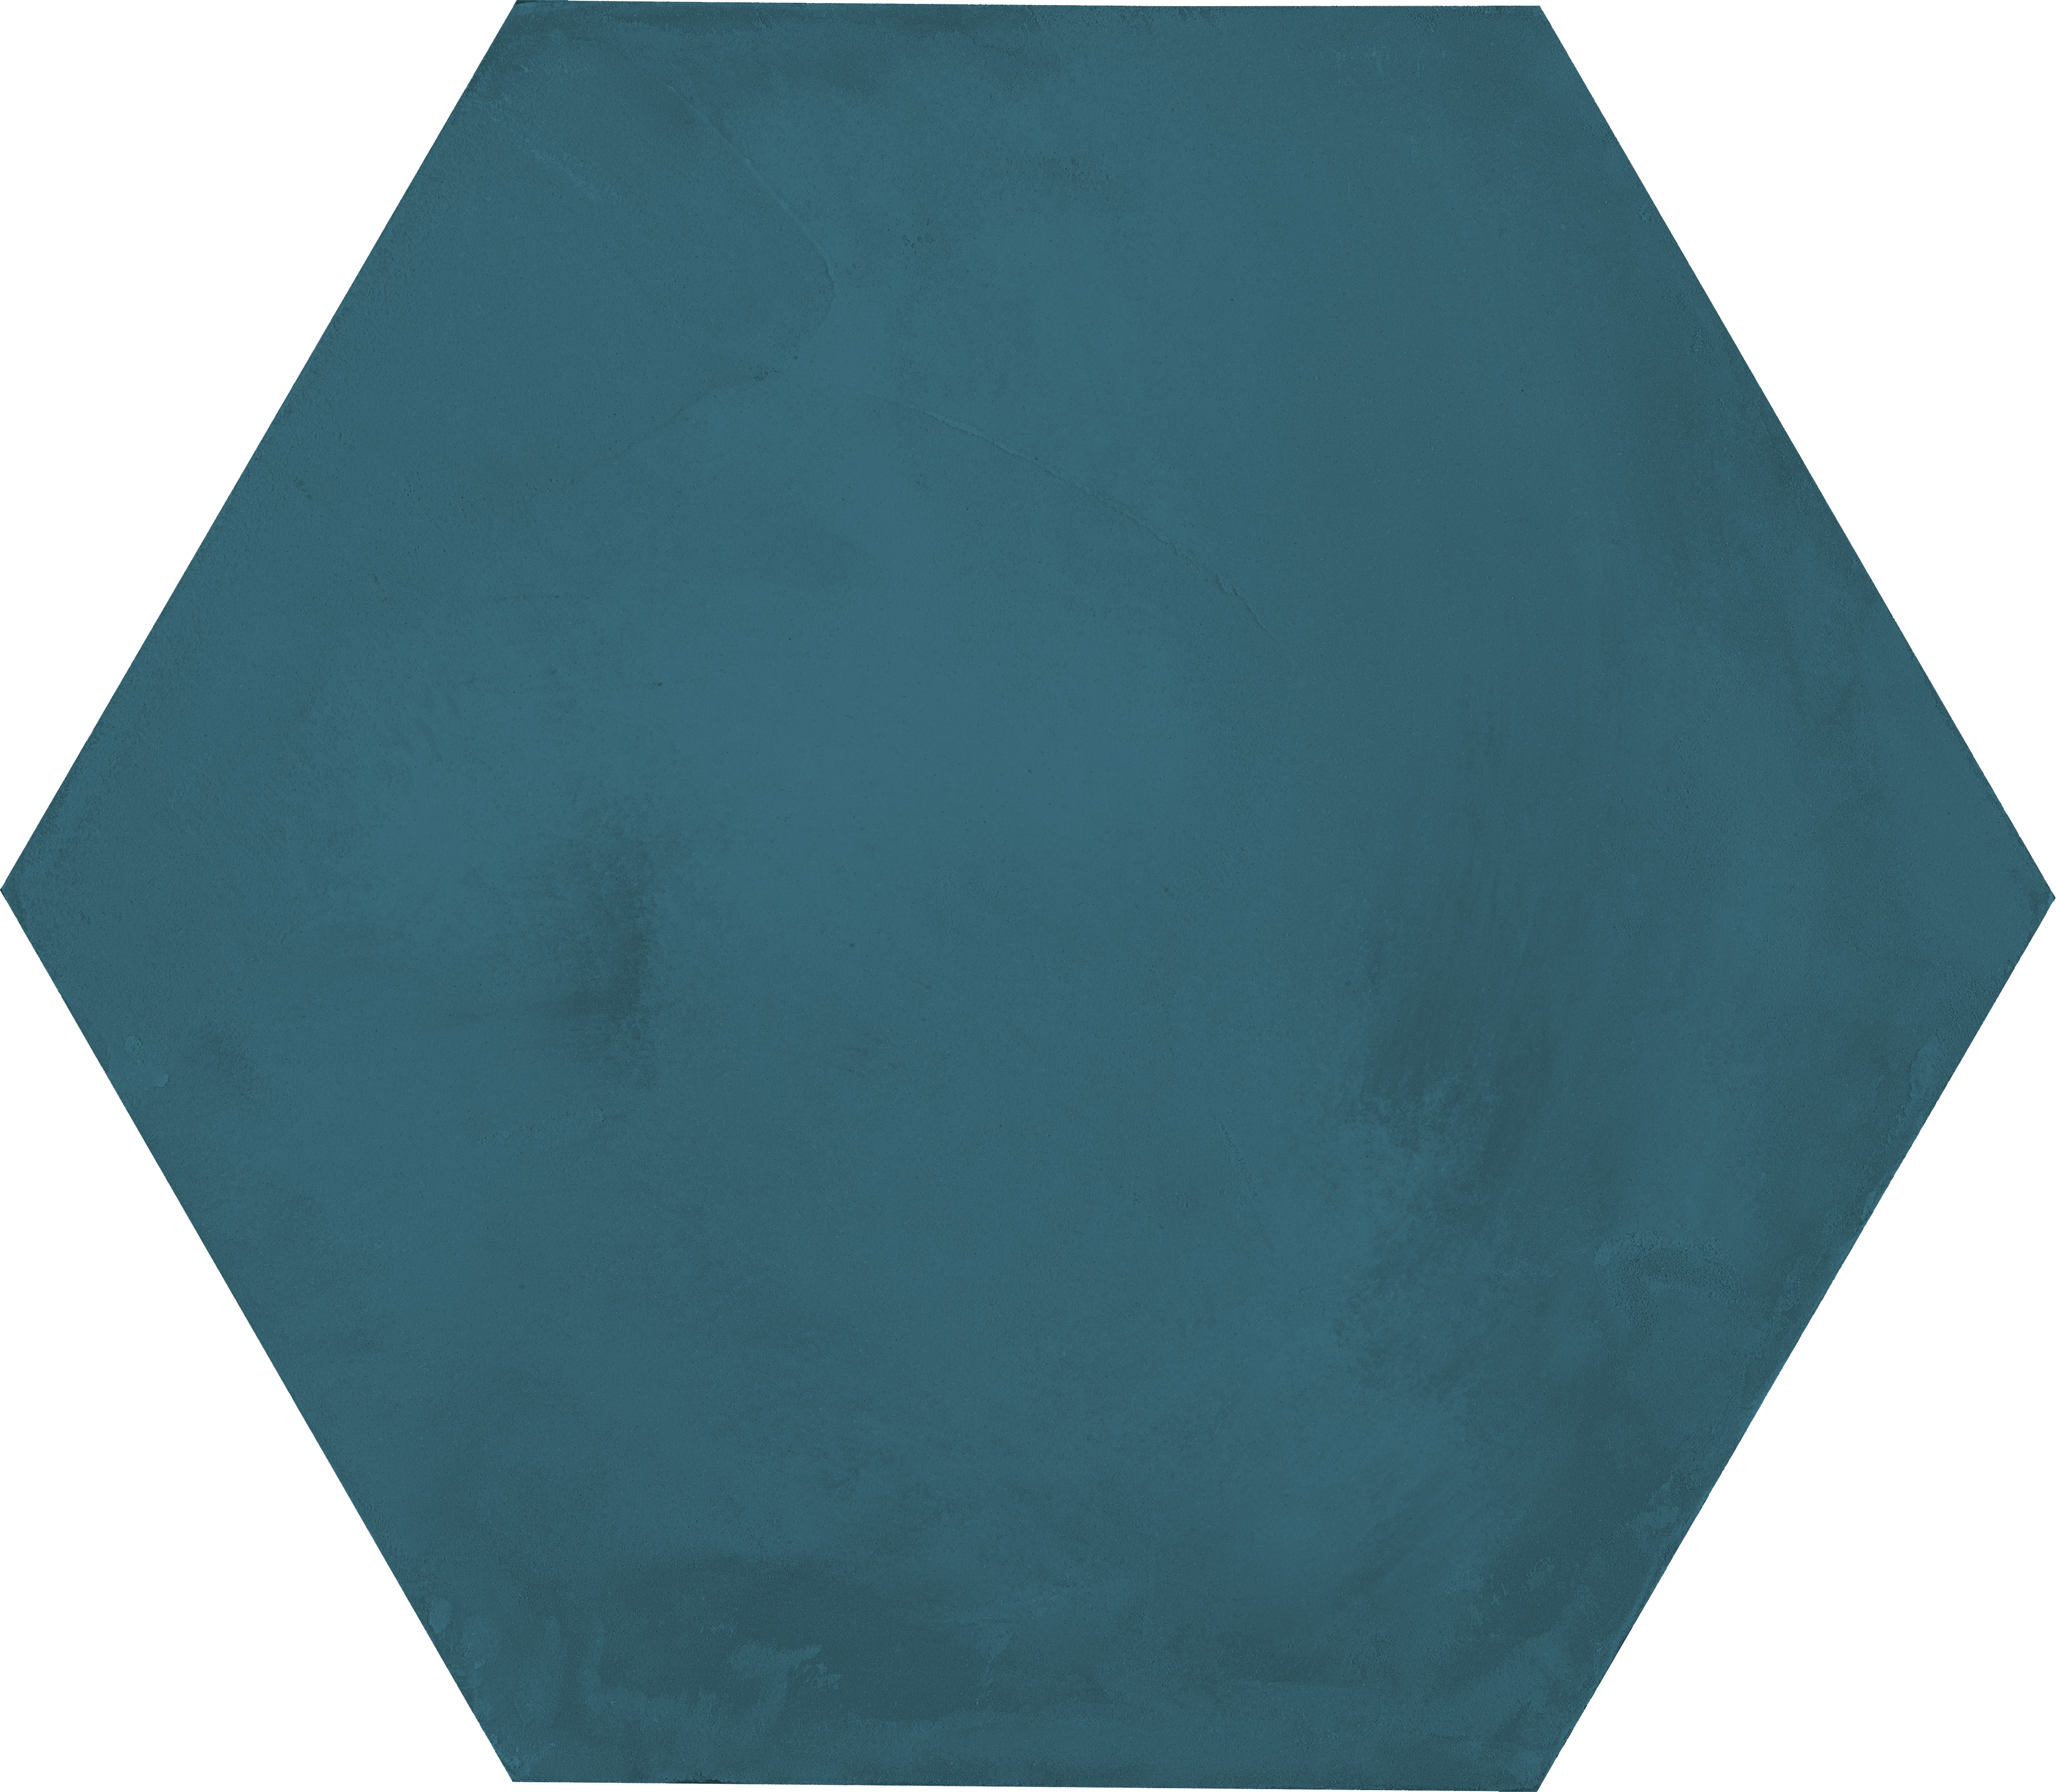 Marcacorona Oceano Naturale – Matt Esagona I406 21,6x25cm 9mm